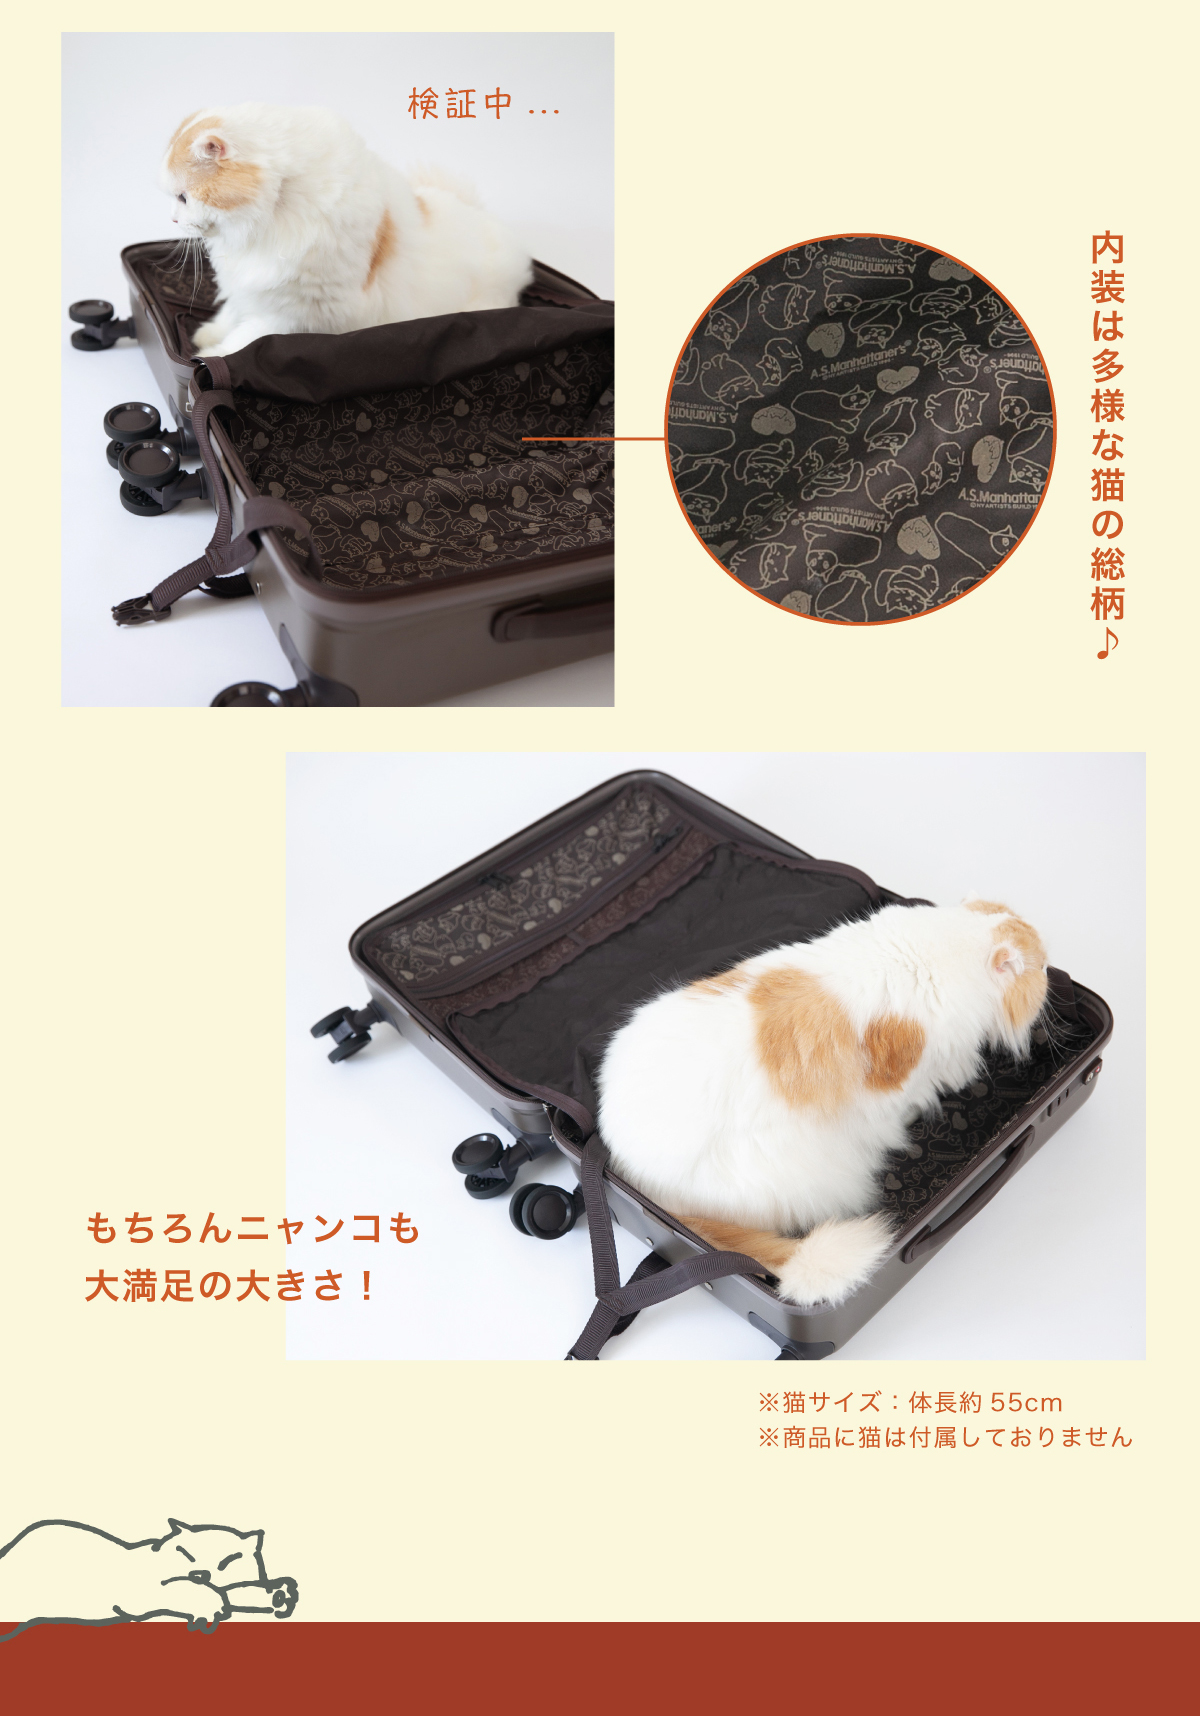 A.S.マンハッタナーズ 猫たちがいっぱいの可愛らしいバッグシリーズ☆ - SAC'S BAR